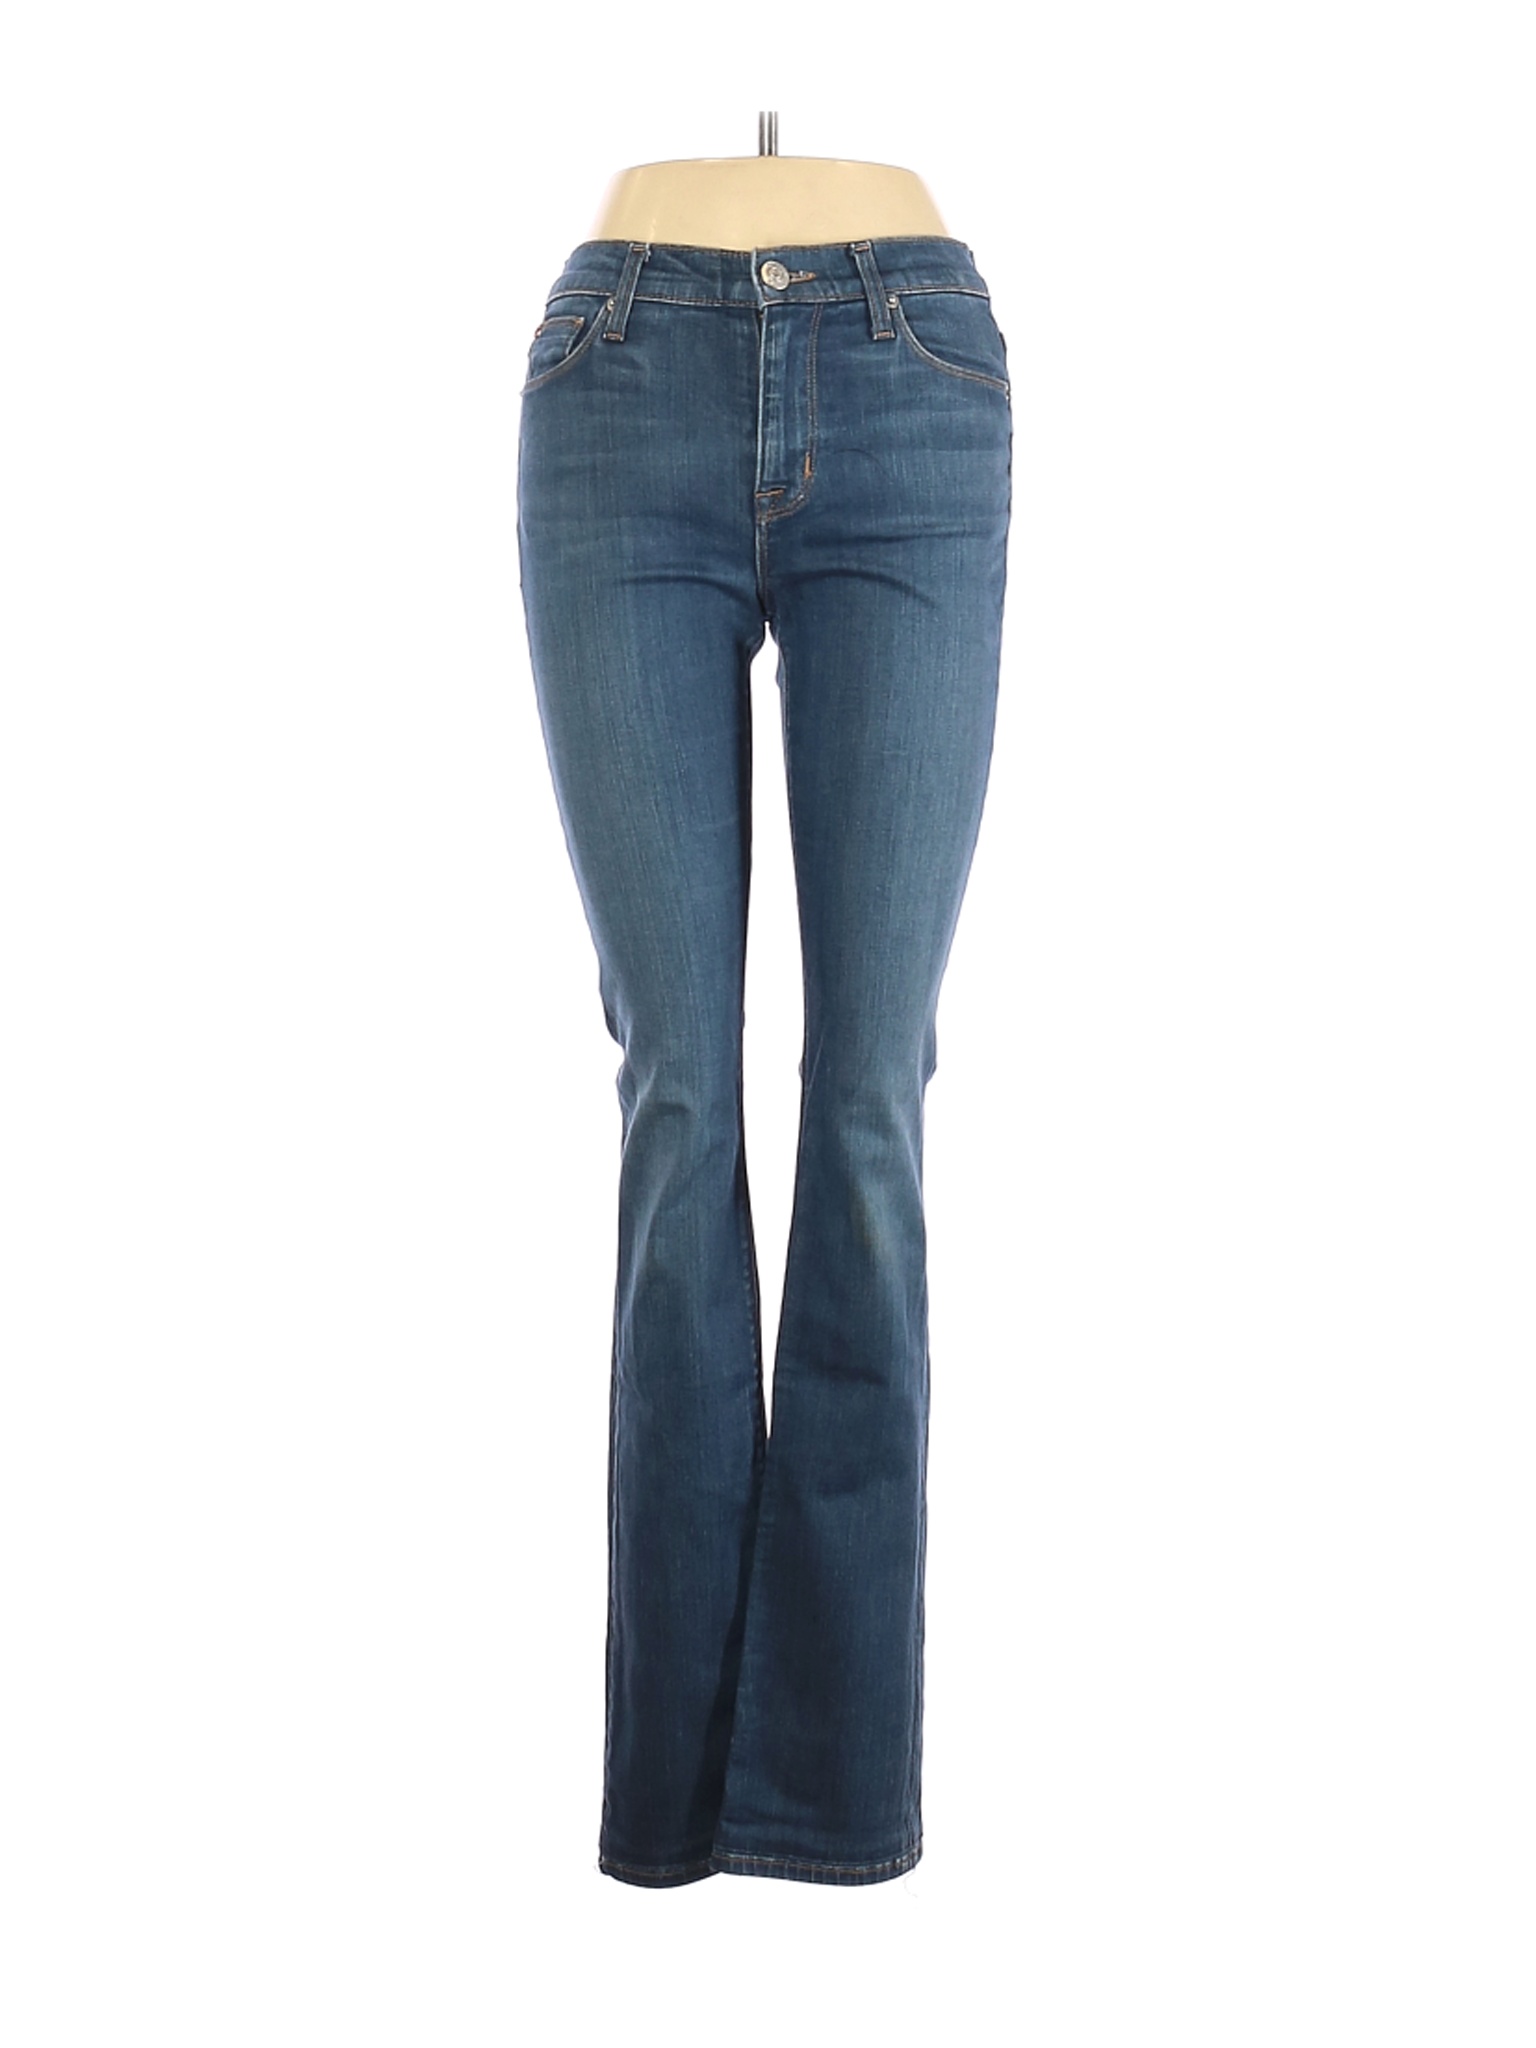 Hudson Jeans Women Blue Jeans 25W | eBay